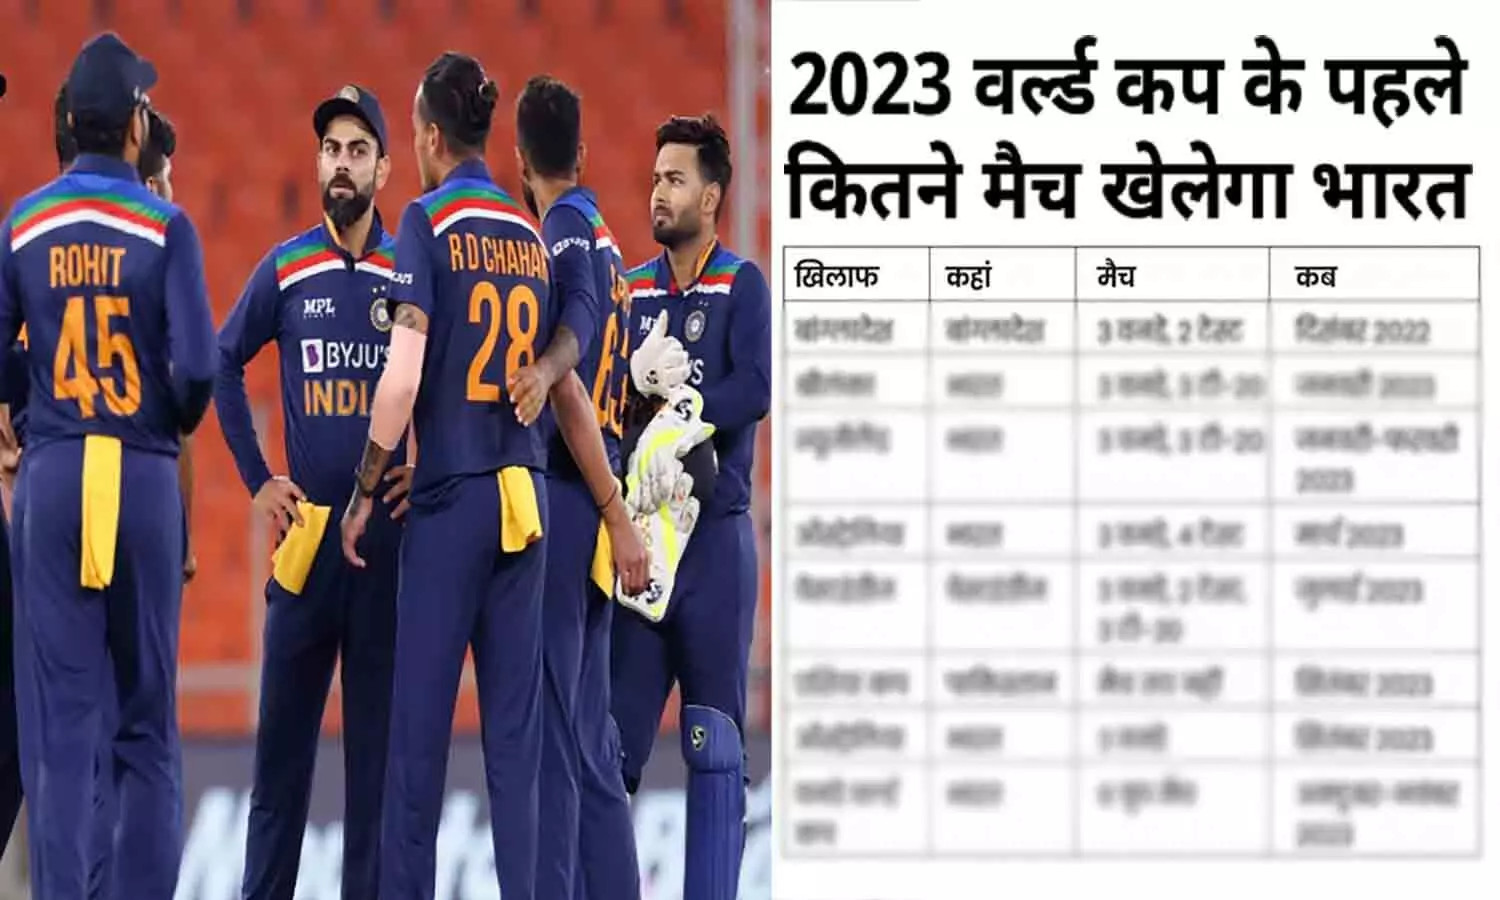 ICC World Cup 2023: वनडे विश्वकप से पहले 18 एकदिवसीय मैच खेलेगी टीम इंडिया, पाकिस्तान में होने वाला एशिया कप भी